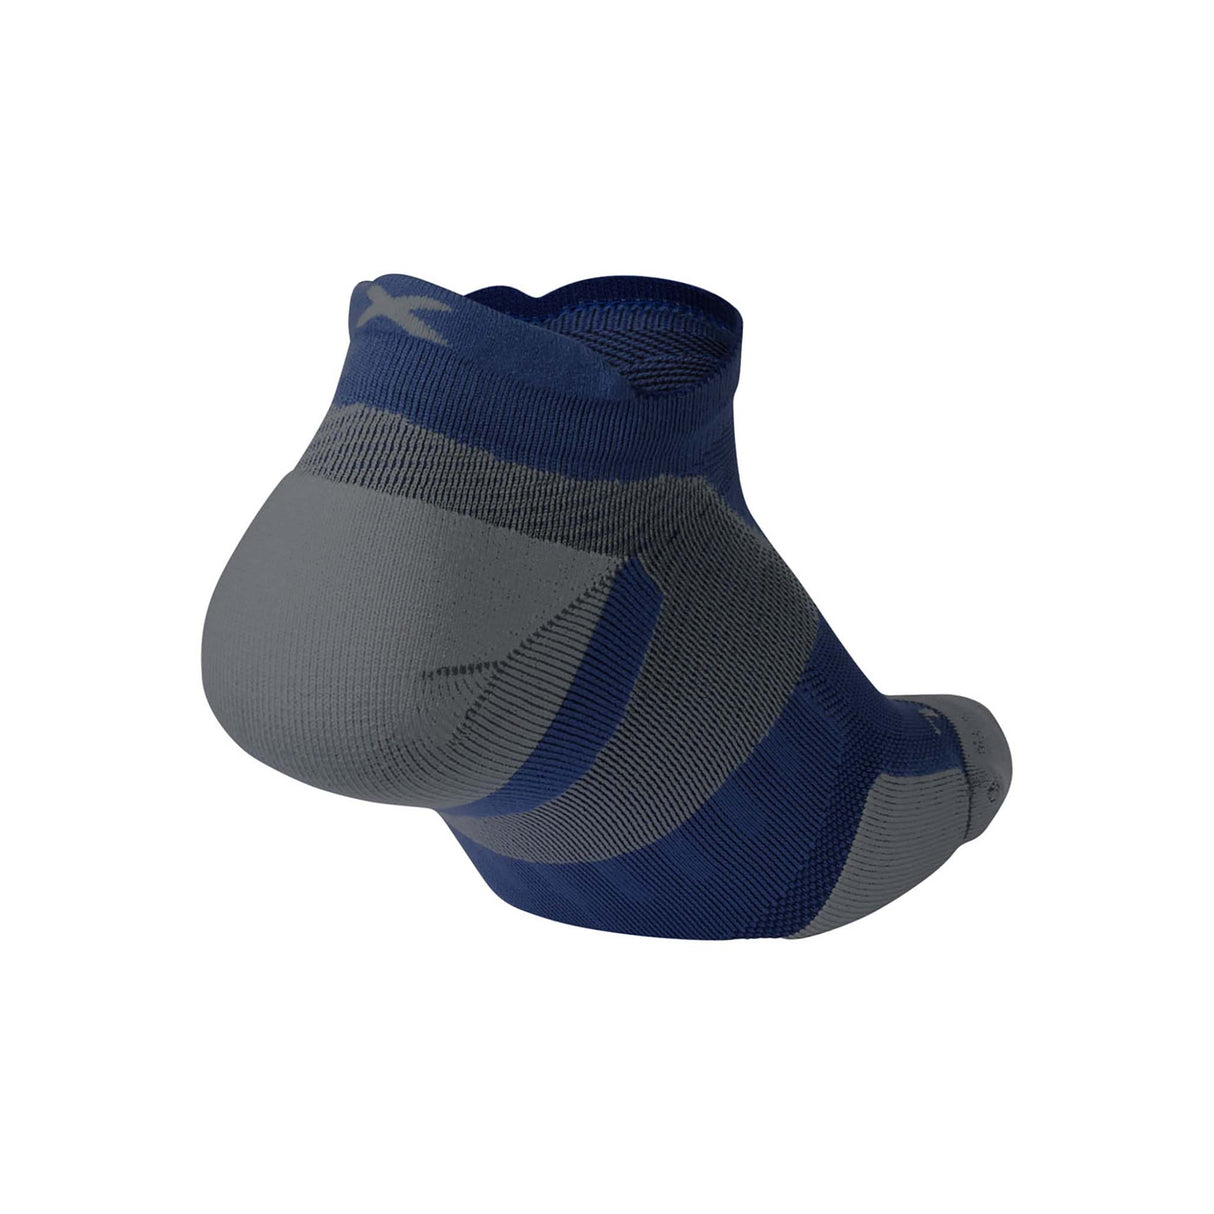 2XU Vectr Cushion chaussettes courtes de course à pied unisexe bleu acier gris talon